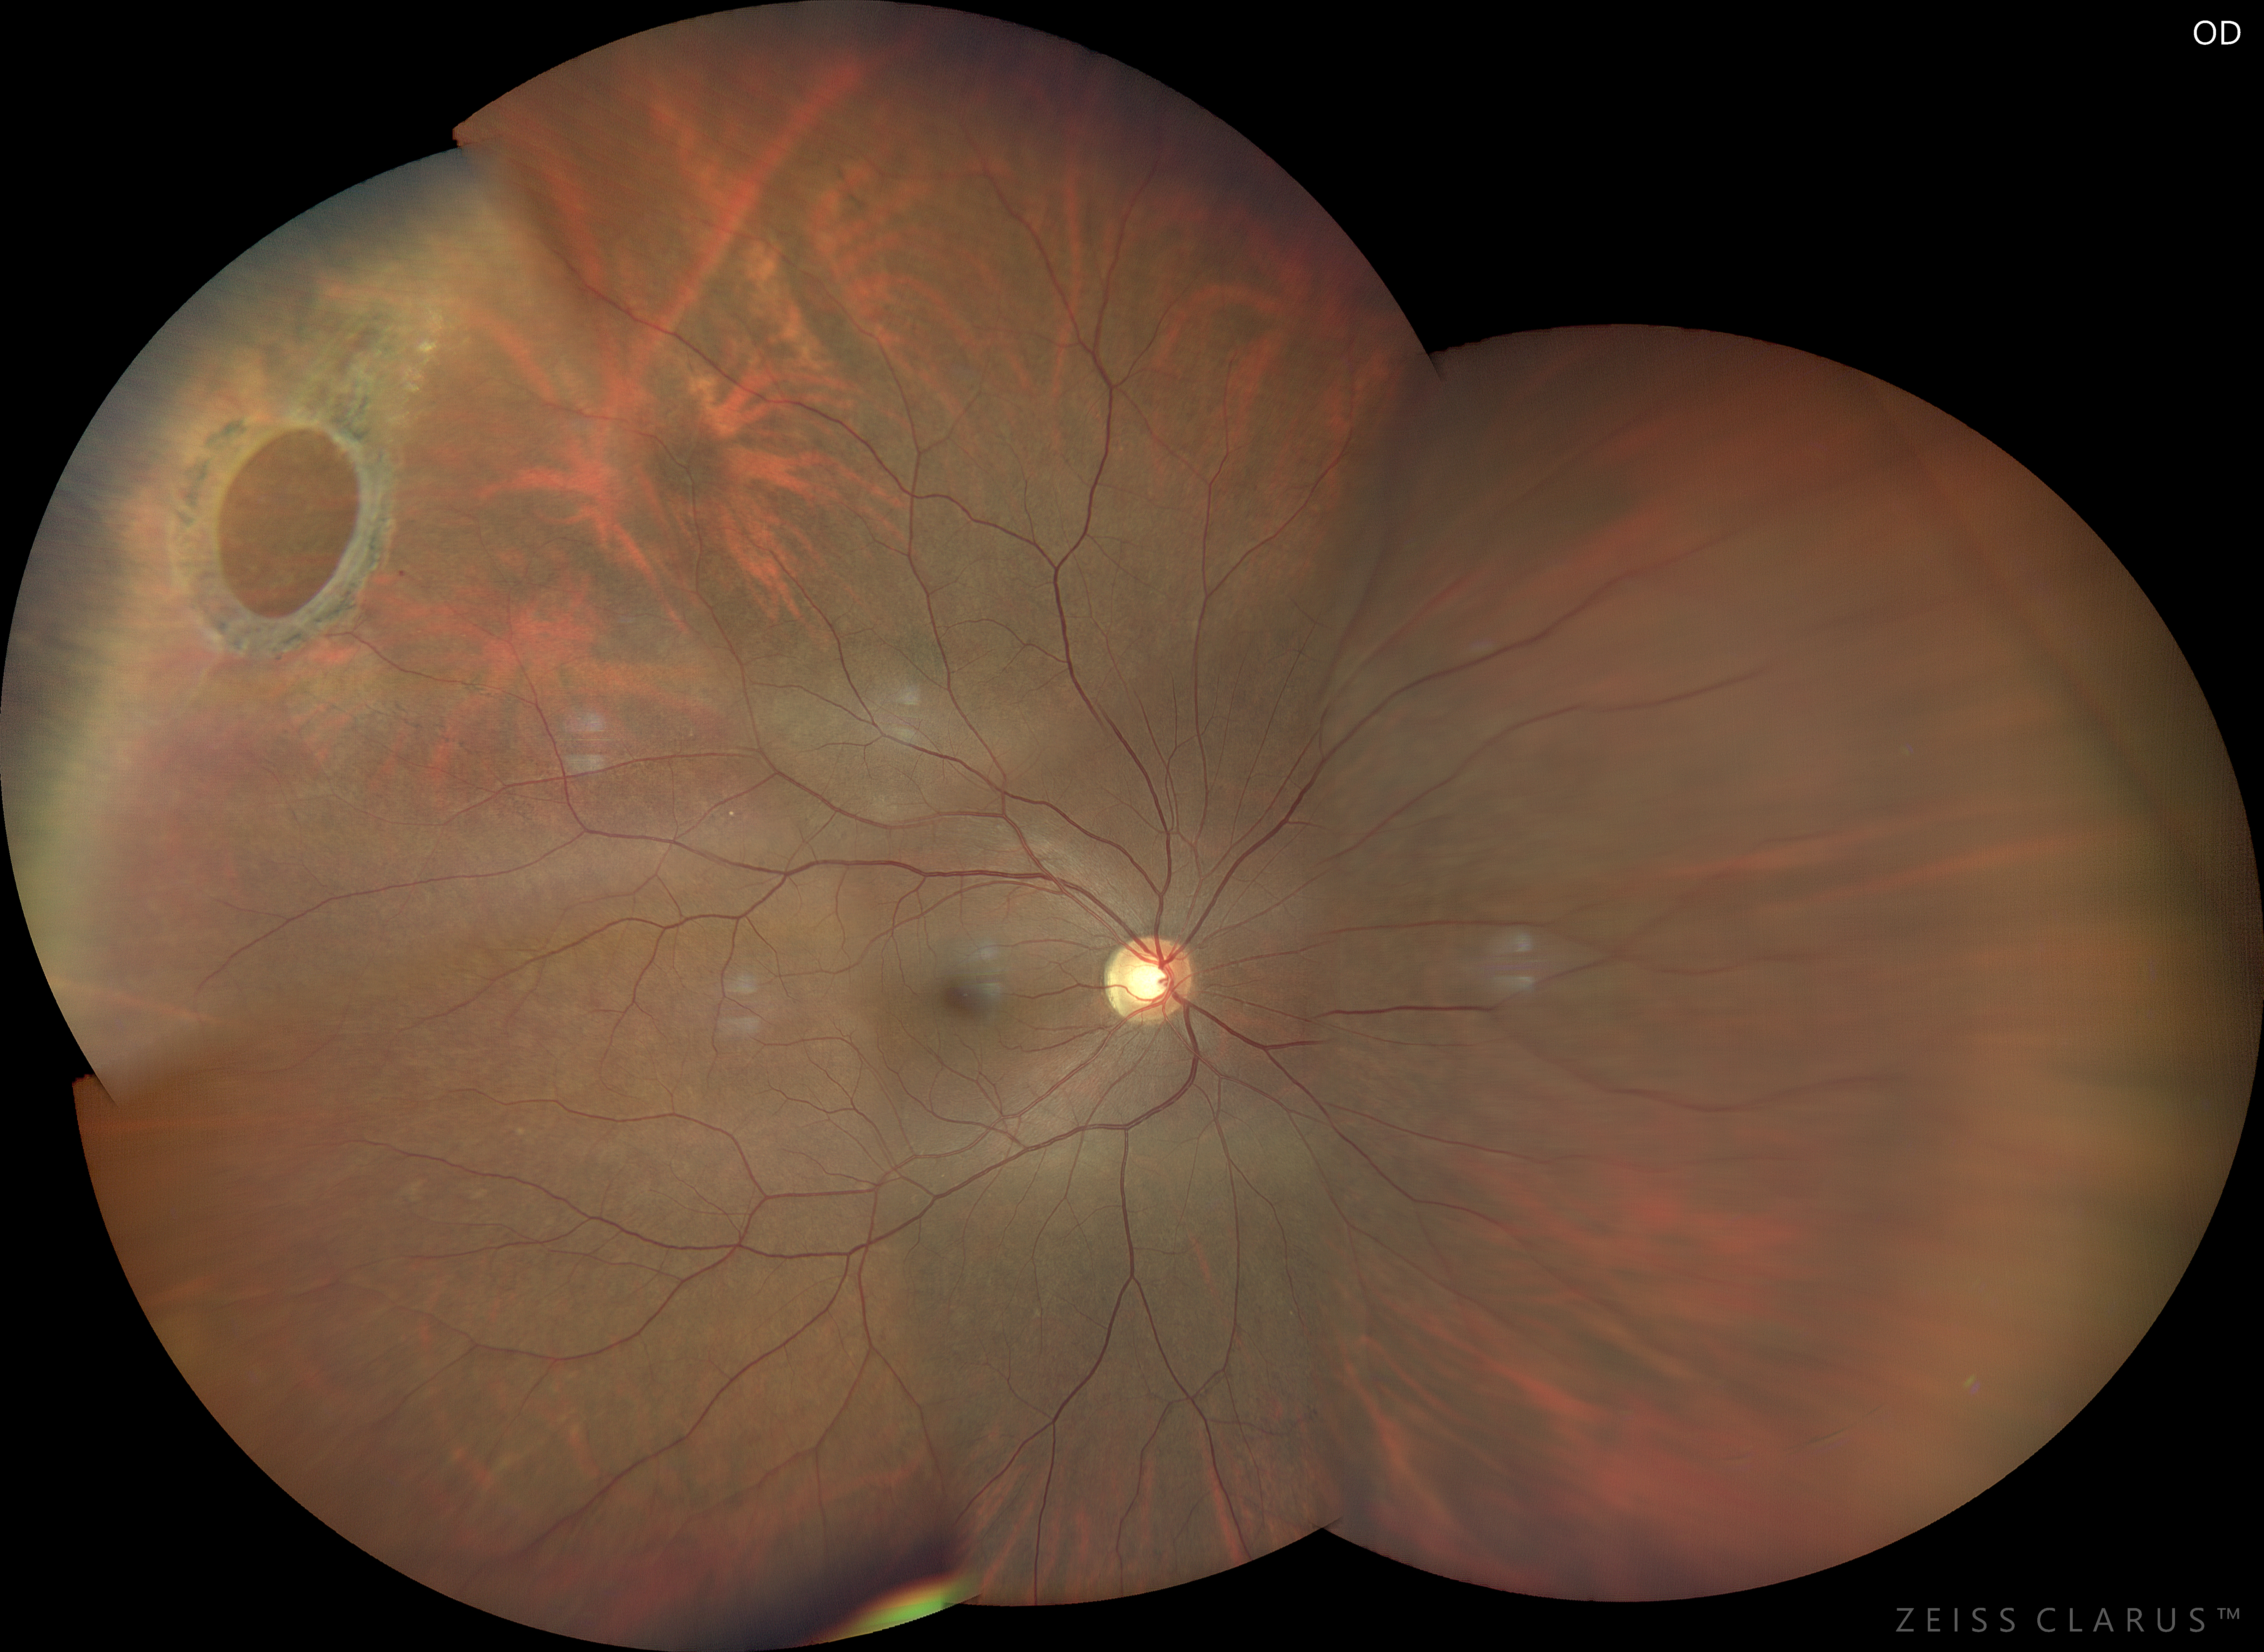 Misurazioni lineari e di area discrepanti su un foro retinico gigante con imaging ultra widefield